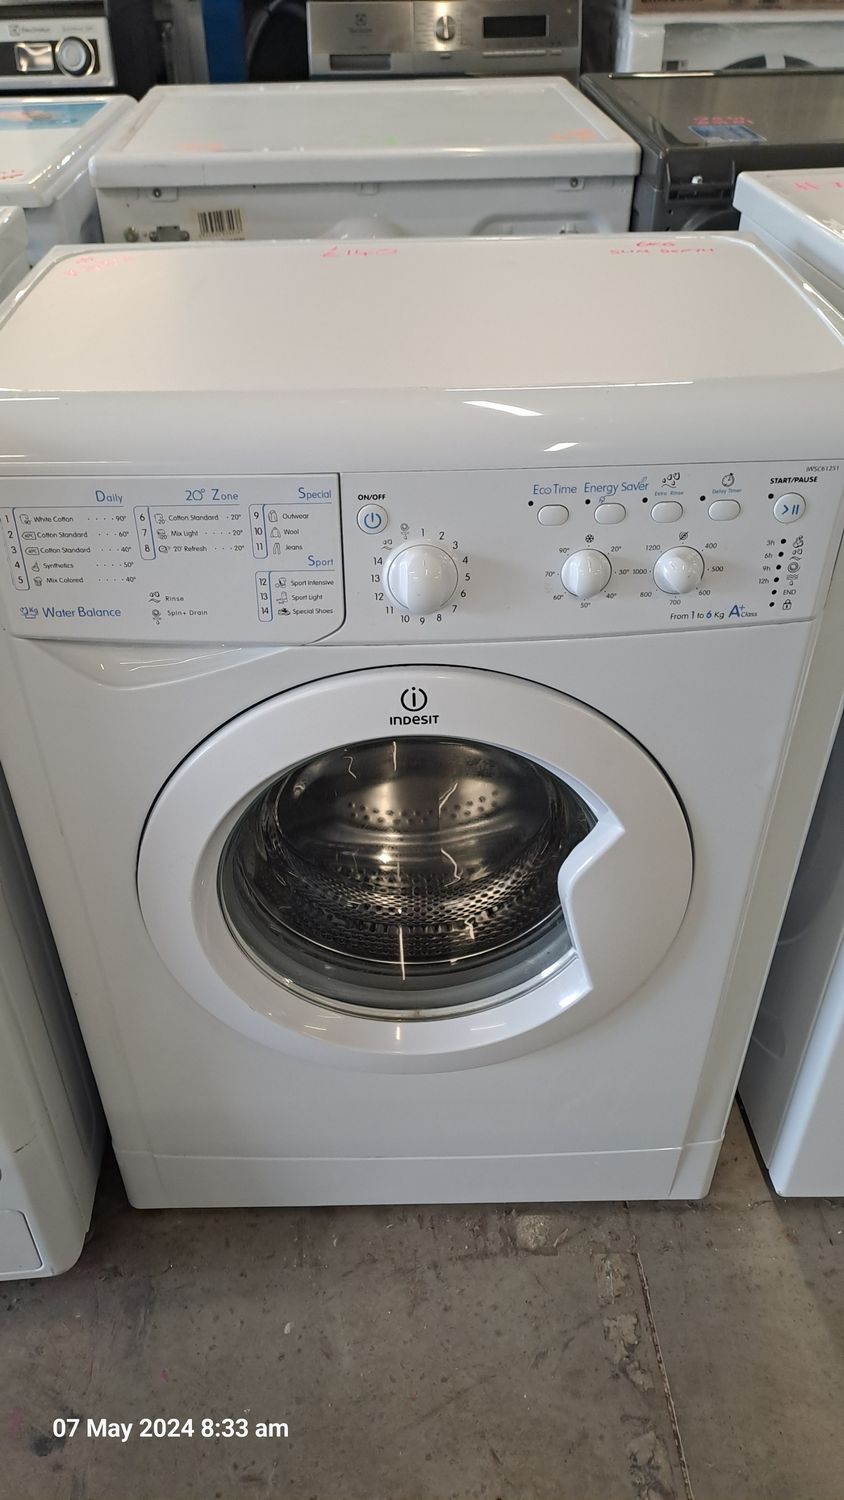 Indesit IWSC61251 6kg Load 1200 Spin Slim Depth Washing Machine White Refurbished
D42cm W59.5cm H85cm